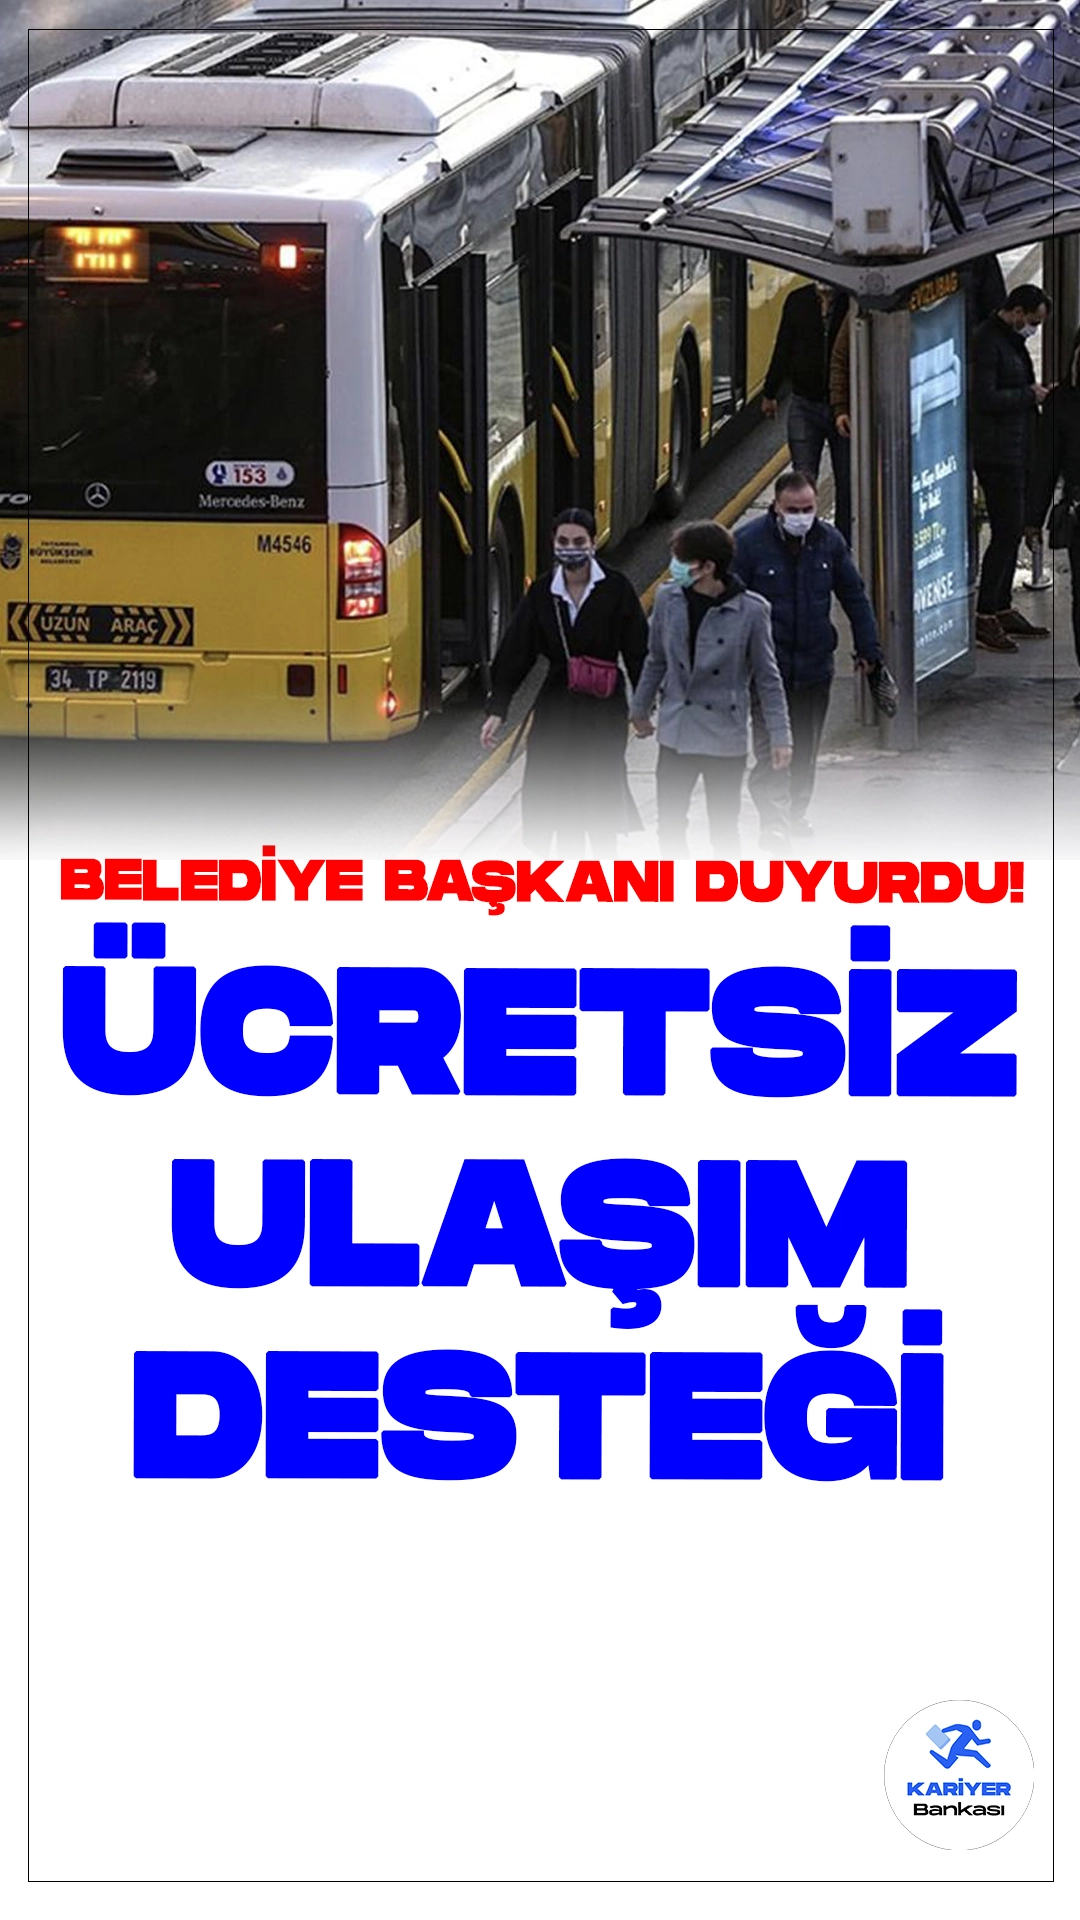 İş Arayanlara Ücretsiz Toplu Taşıma Desteği Başladı.İstanbul Büyükşehir Belediyesi (İBB), iş arayan vatandaşlara büyük bir destek sunuyor. İBB Başkanı Ekrem İmamoğlu'nun duyurusuyla birlikte, iş arayanlar için 3 ay boyunca ücretsiz toplu taşıma imkanı tanındı.